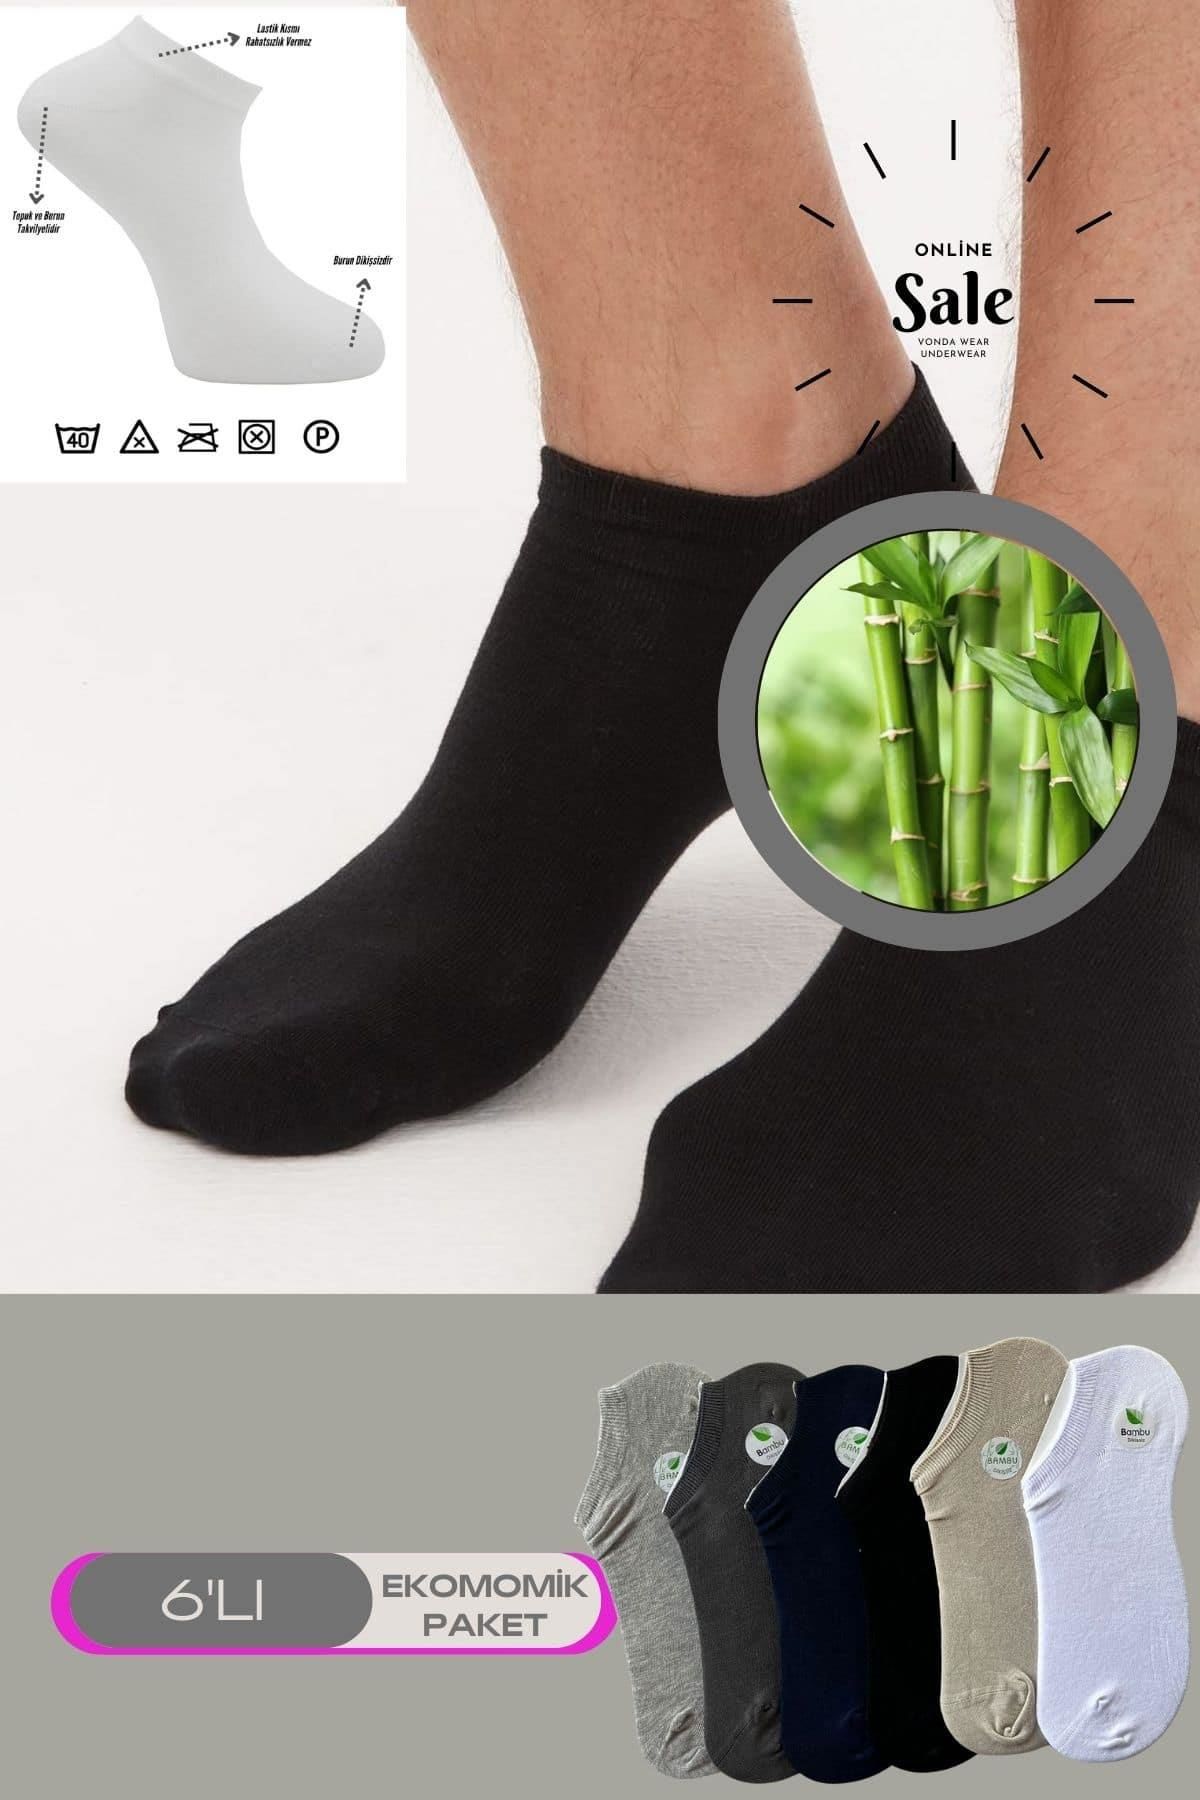 Erkek Bambu Snekars Topuk Burun Dikişsiz Takviyeli Çorap-6lı